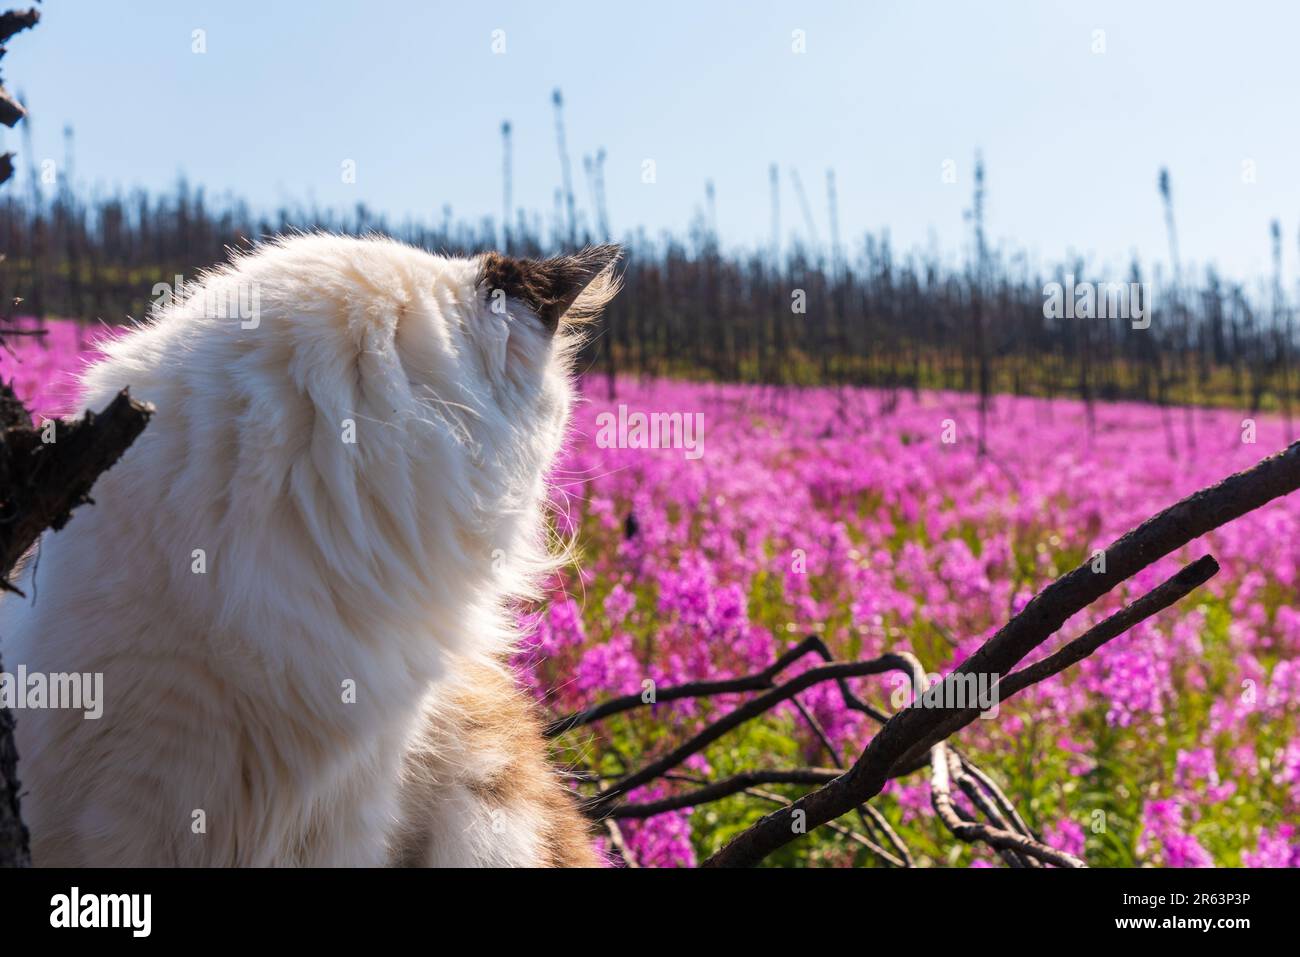 Die Katze steht im Sommer in Nordkanada auf dem Feld mit rosa Feuerweed-Blumen und die wunderschöne pinkfarbene, lila Landschaft umgibt die Katze Stockfoto